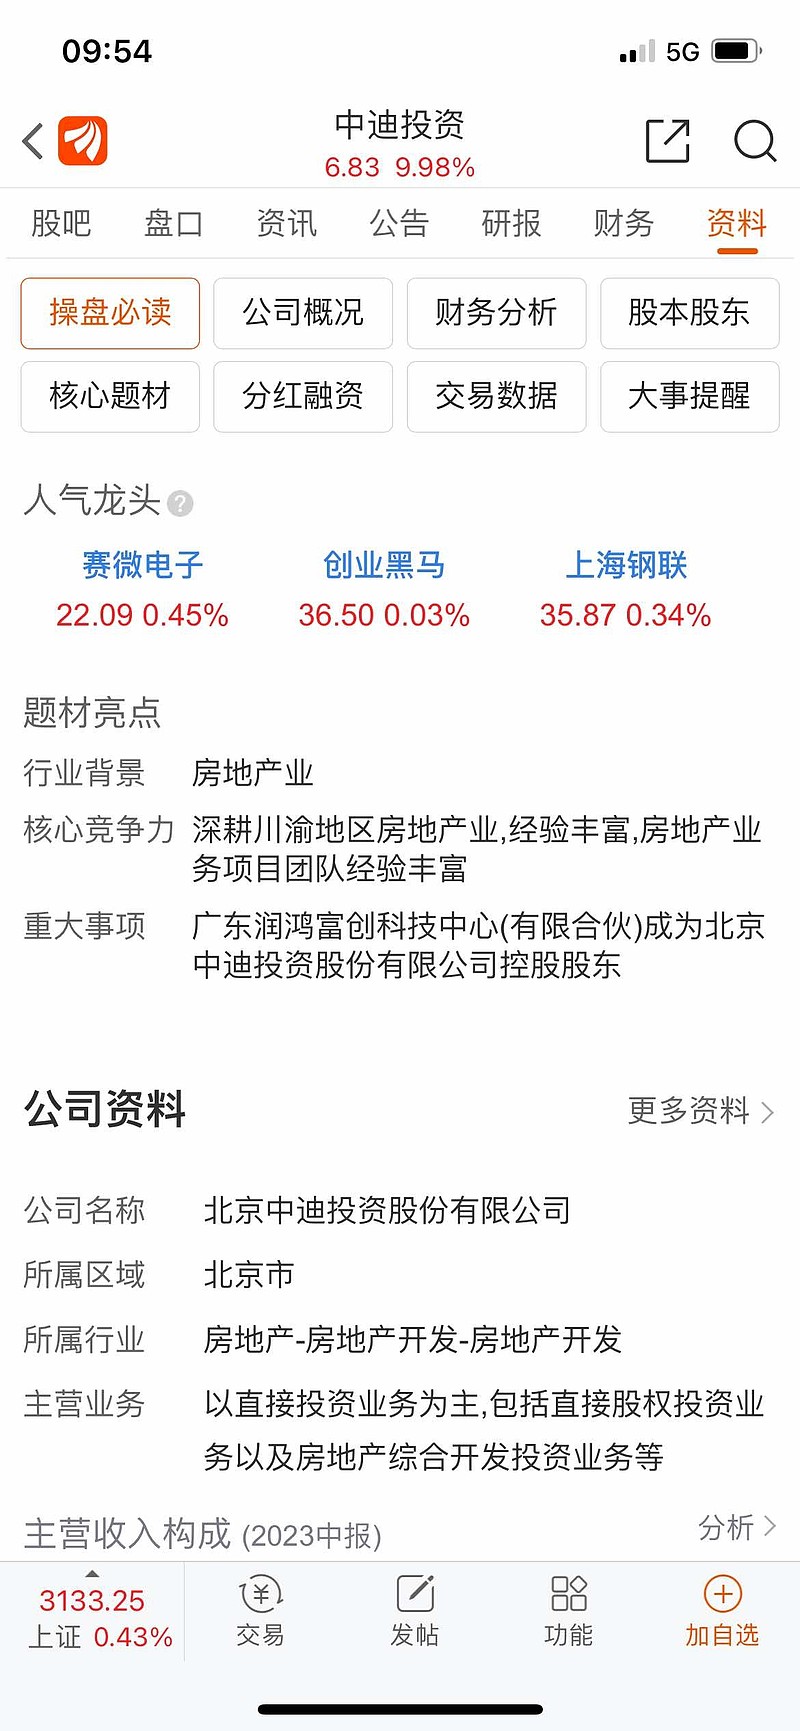 等北京房价上涨10%后再出手。